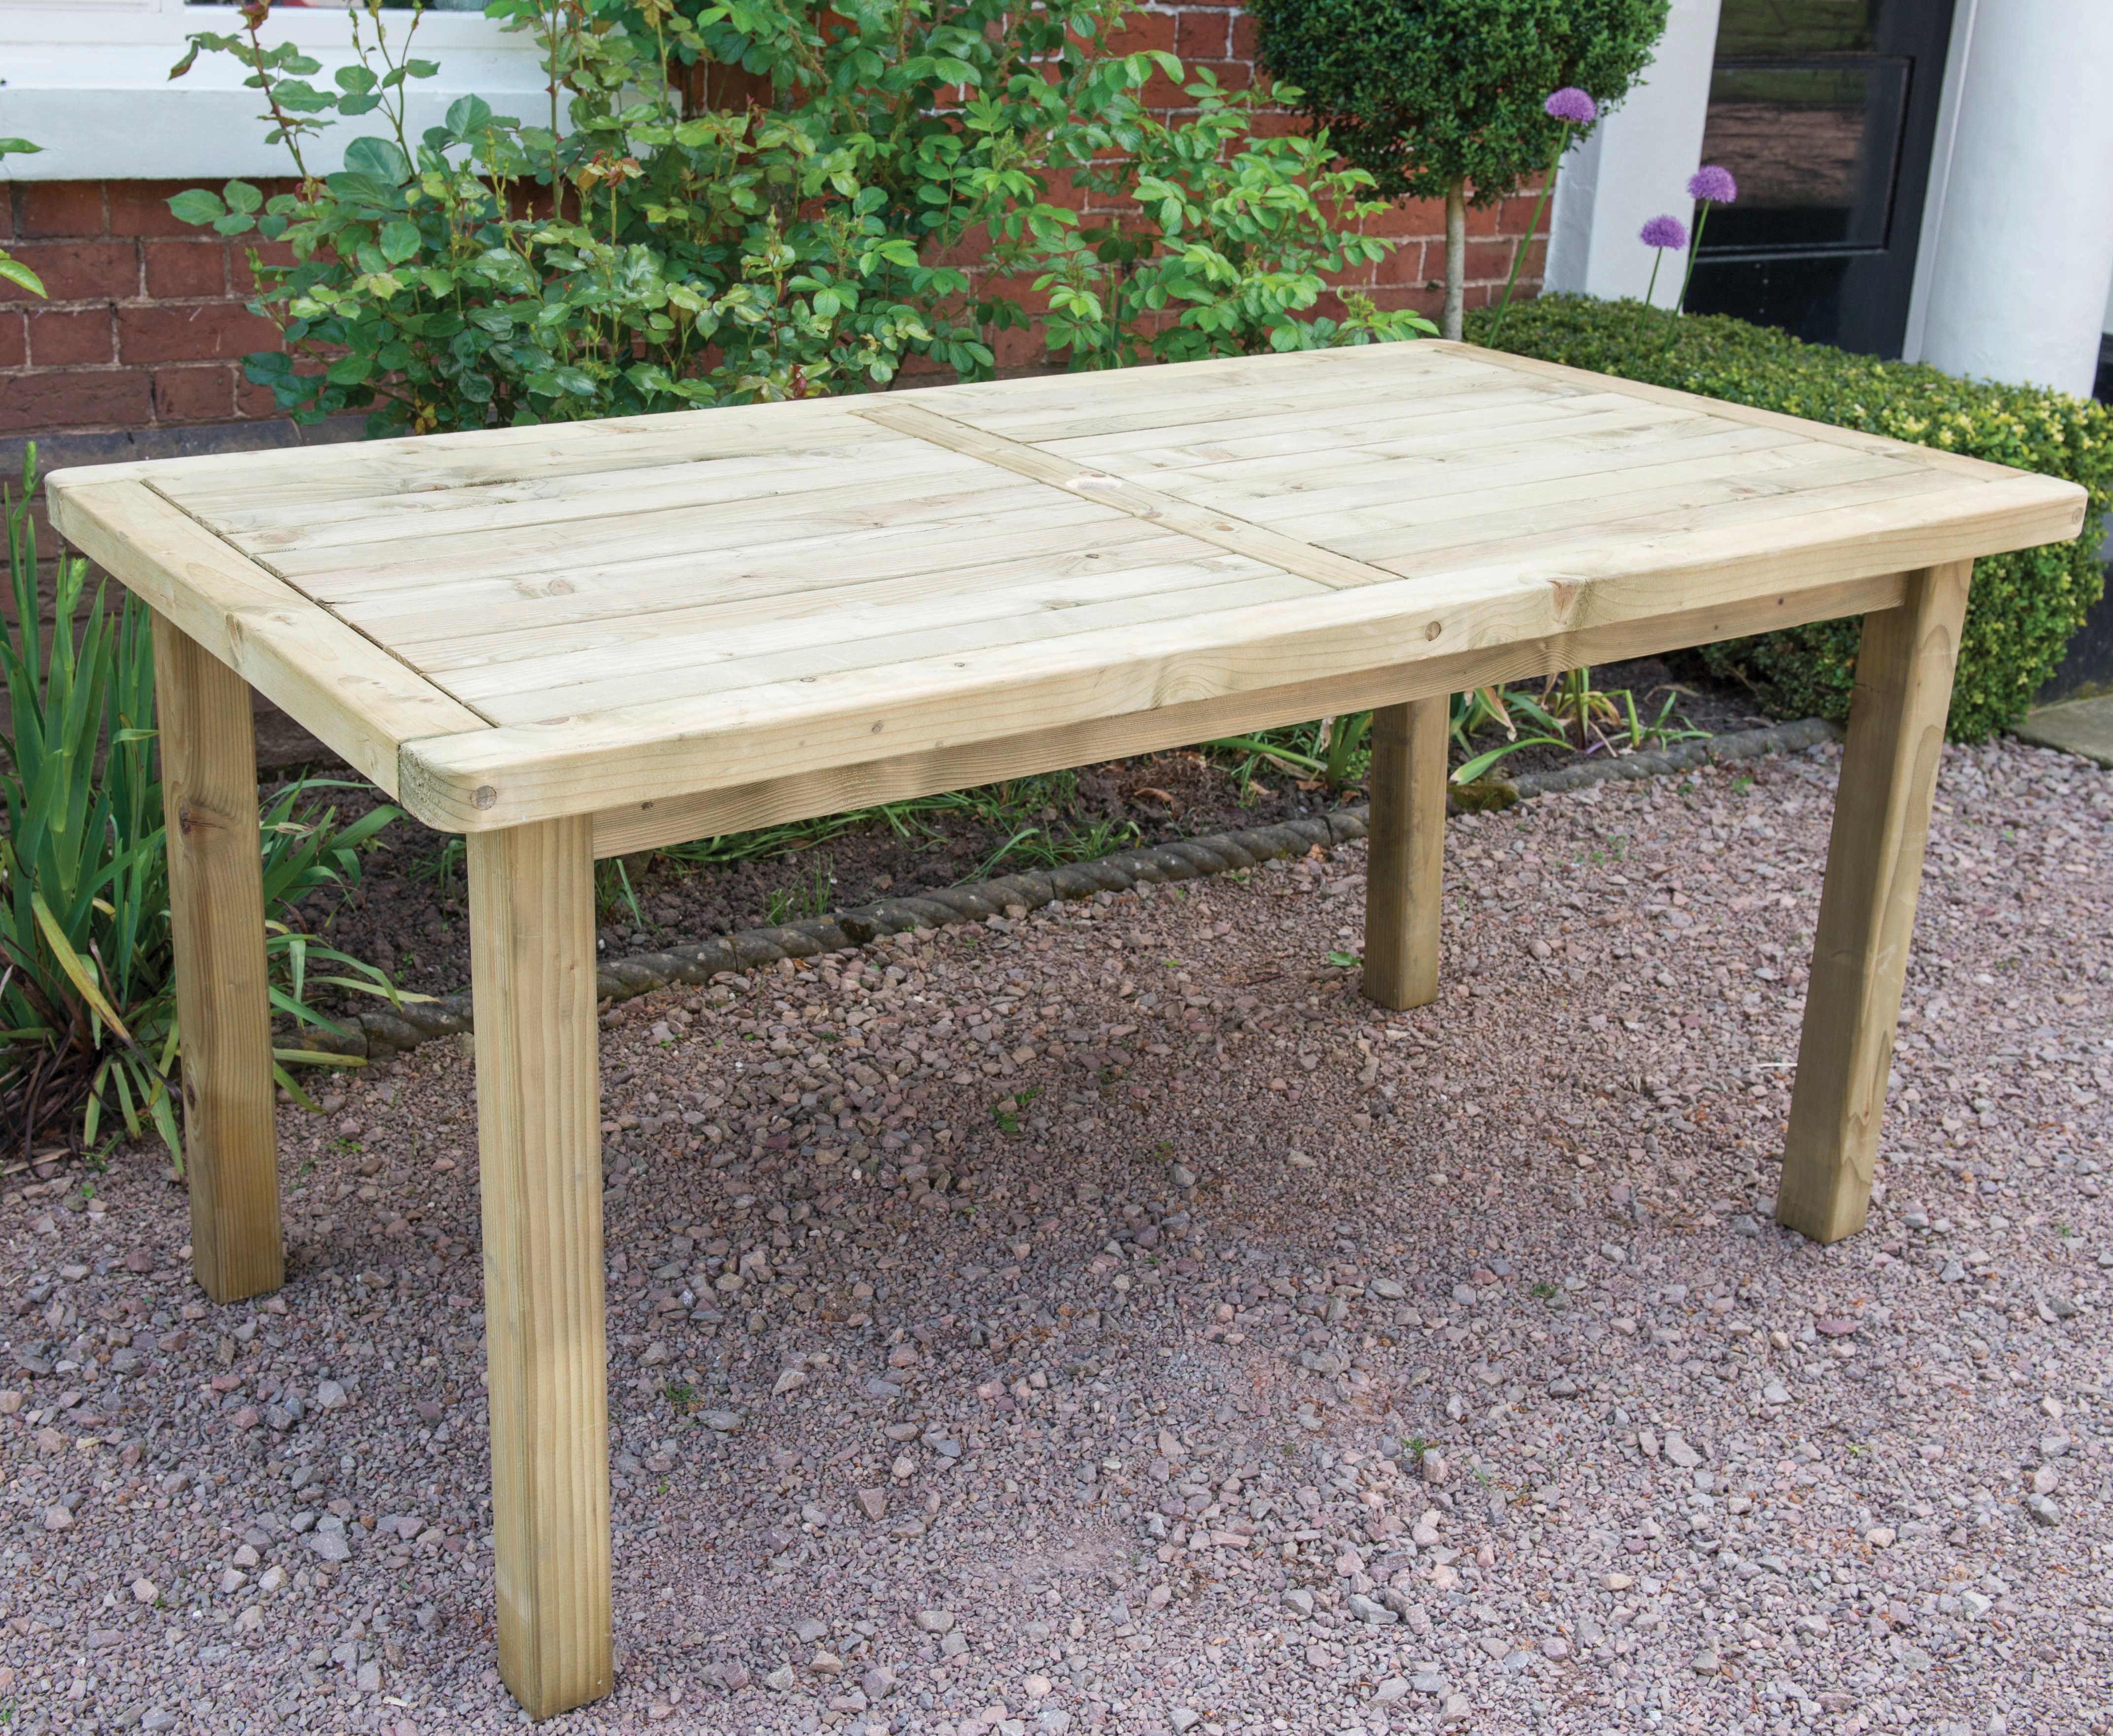 Image of Forest Garden Rosedene Table - 1.6m